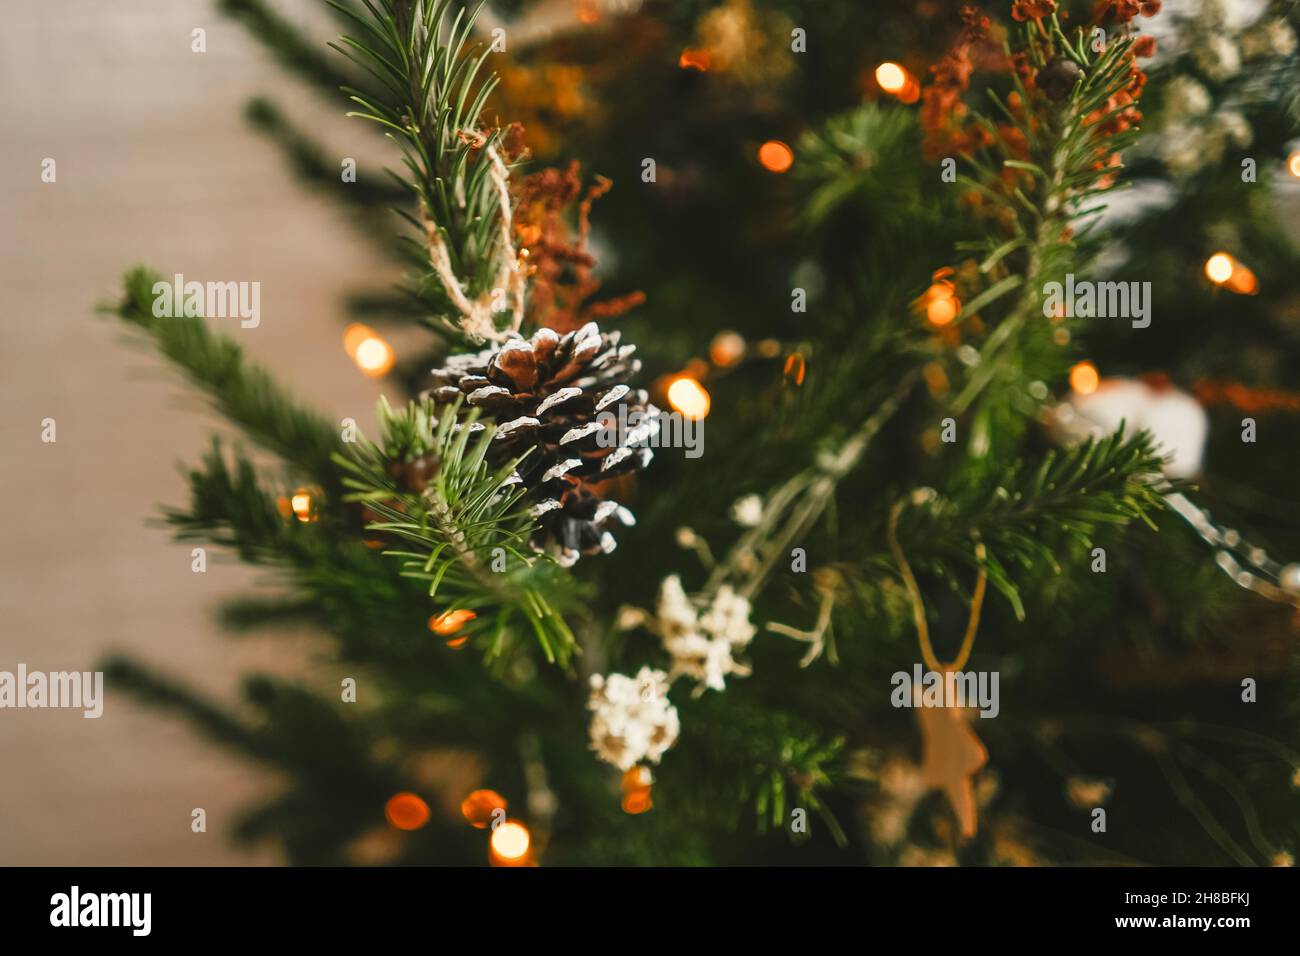 Magnifique arbre de Noël décoré avec des cônes de pin.Motif bohémien.Gros plan. Banque D'Images